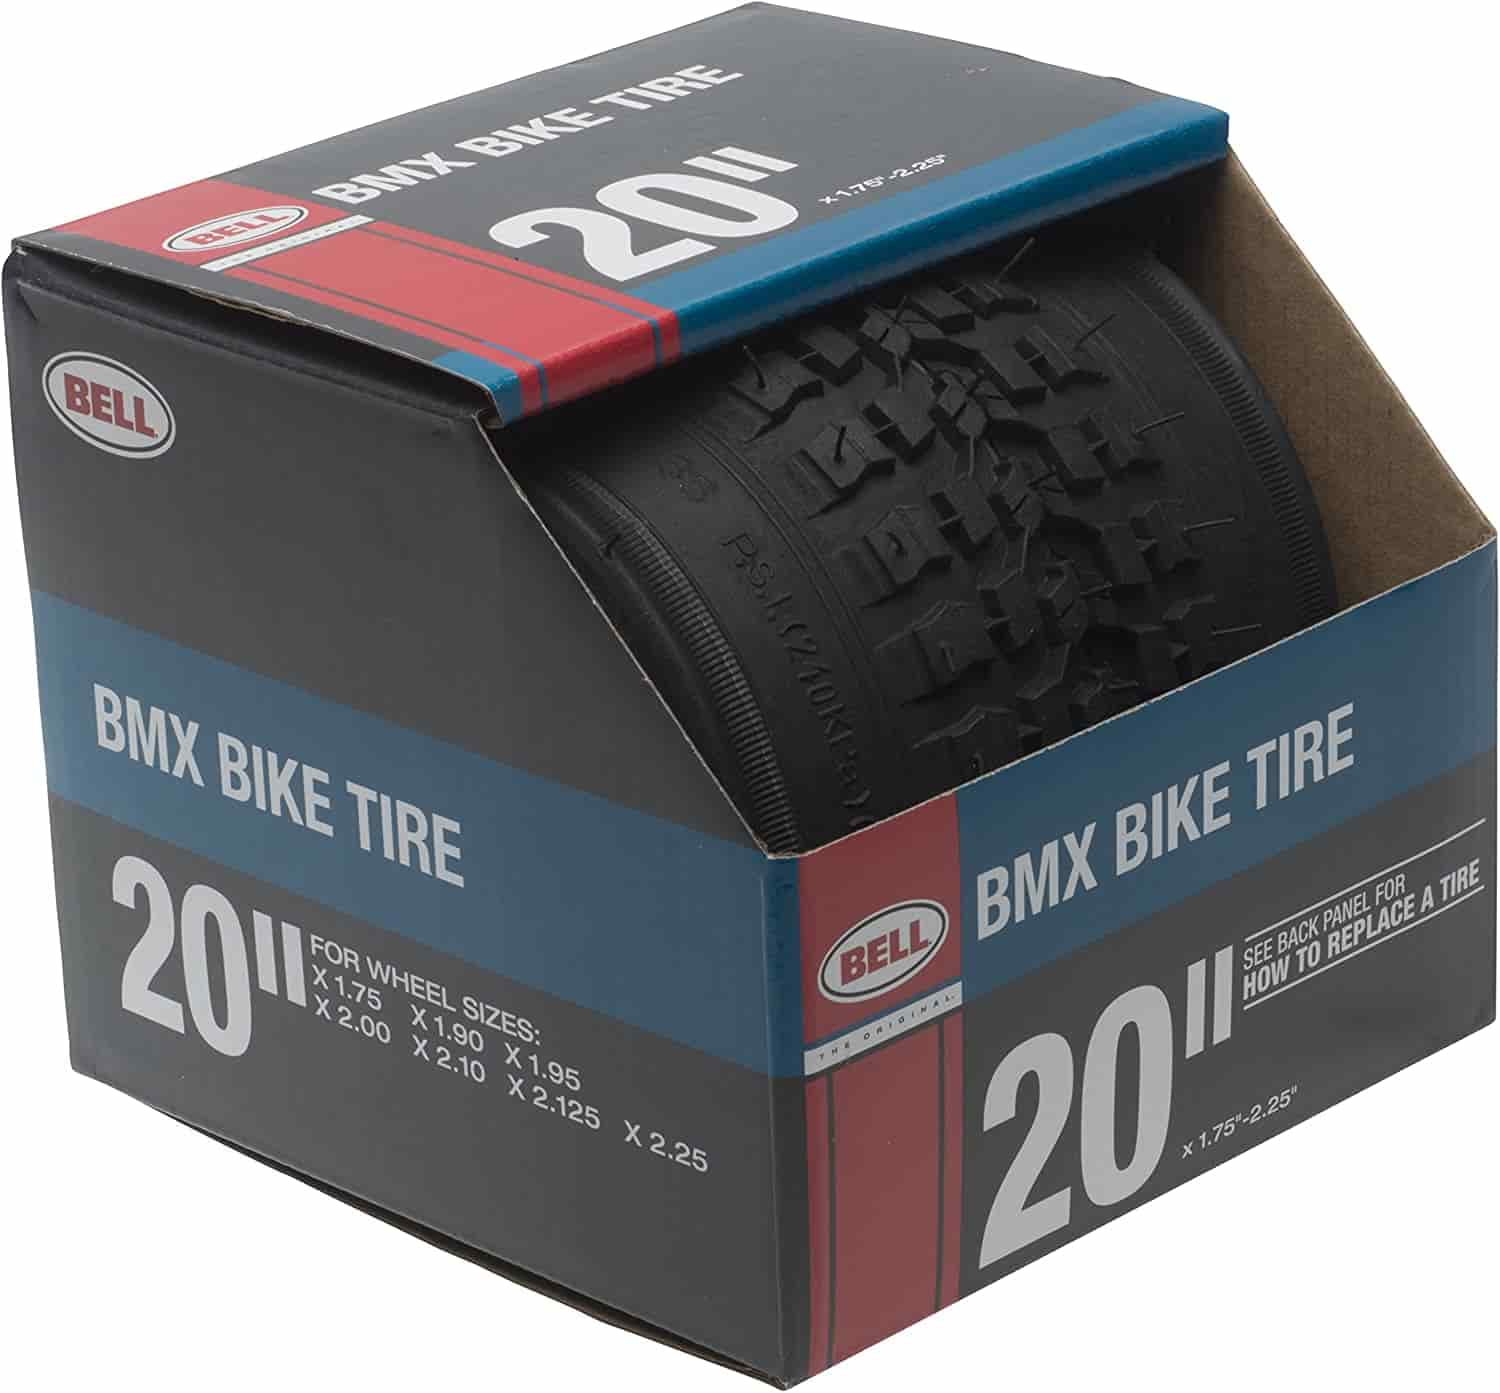 Bell BMX Bike Tires